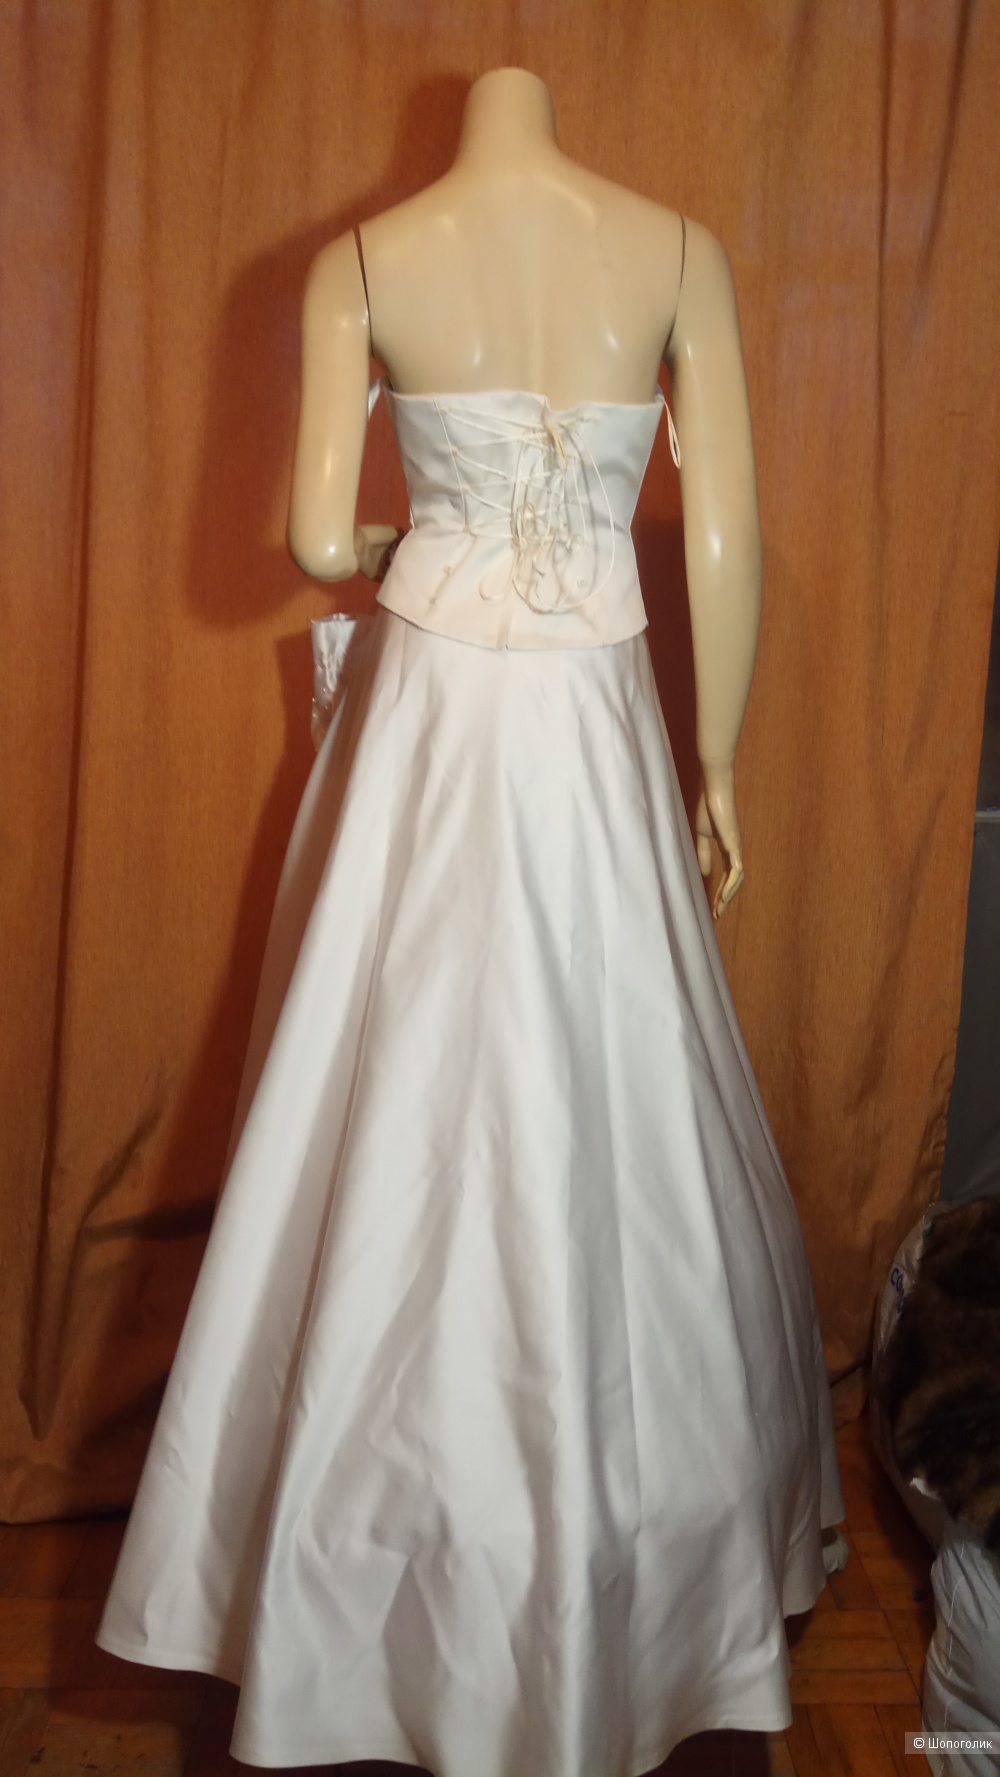 Свадебное платье полный комплект S/M размер